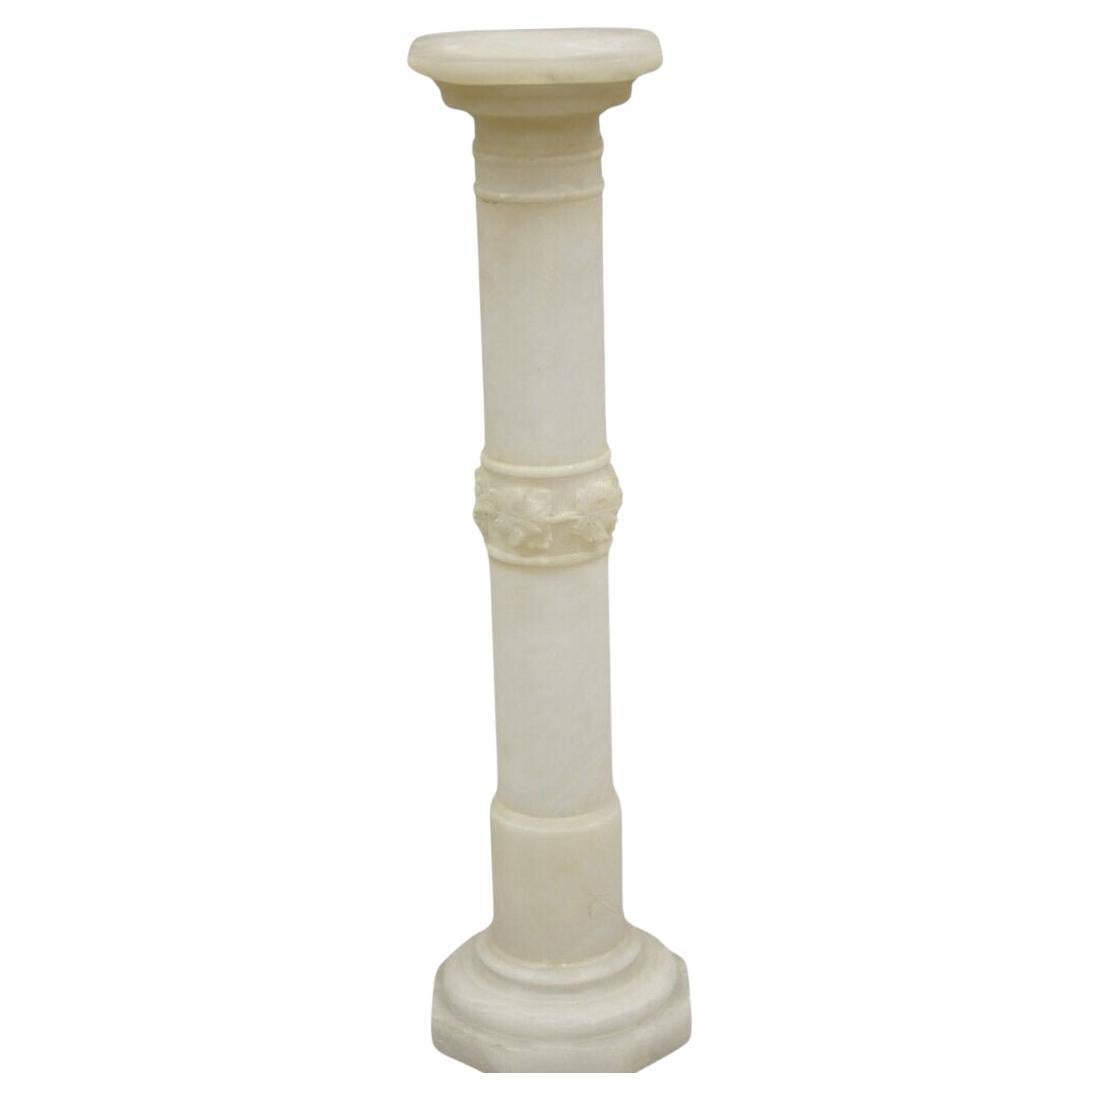 Ancienne colonne à piédestal classique en érable sculpté en albâtre et feuille d'érable